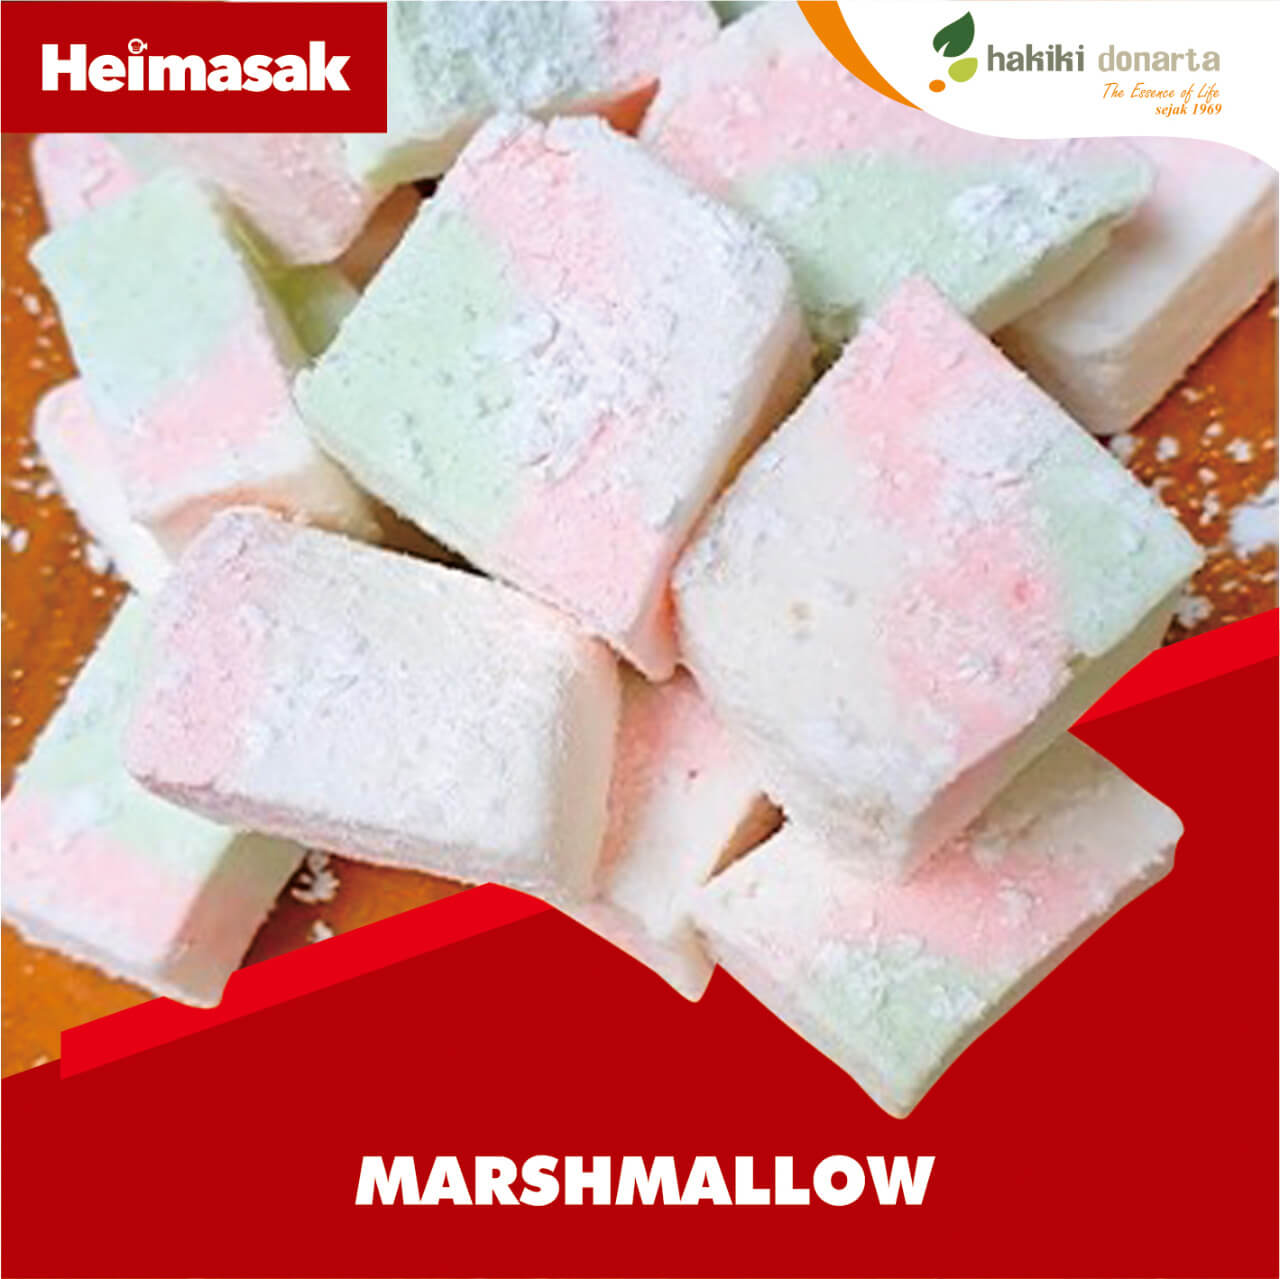 Heimasak – Hakiki Donarta – Marshmallow